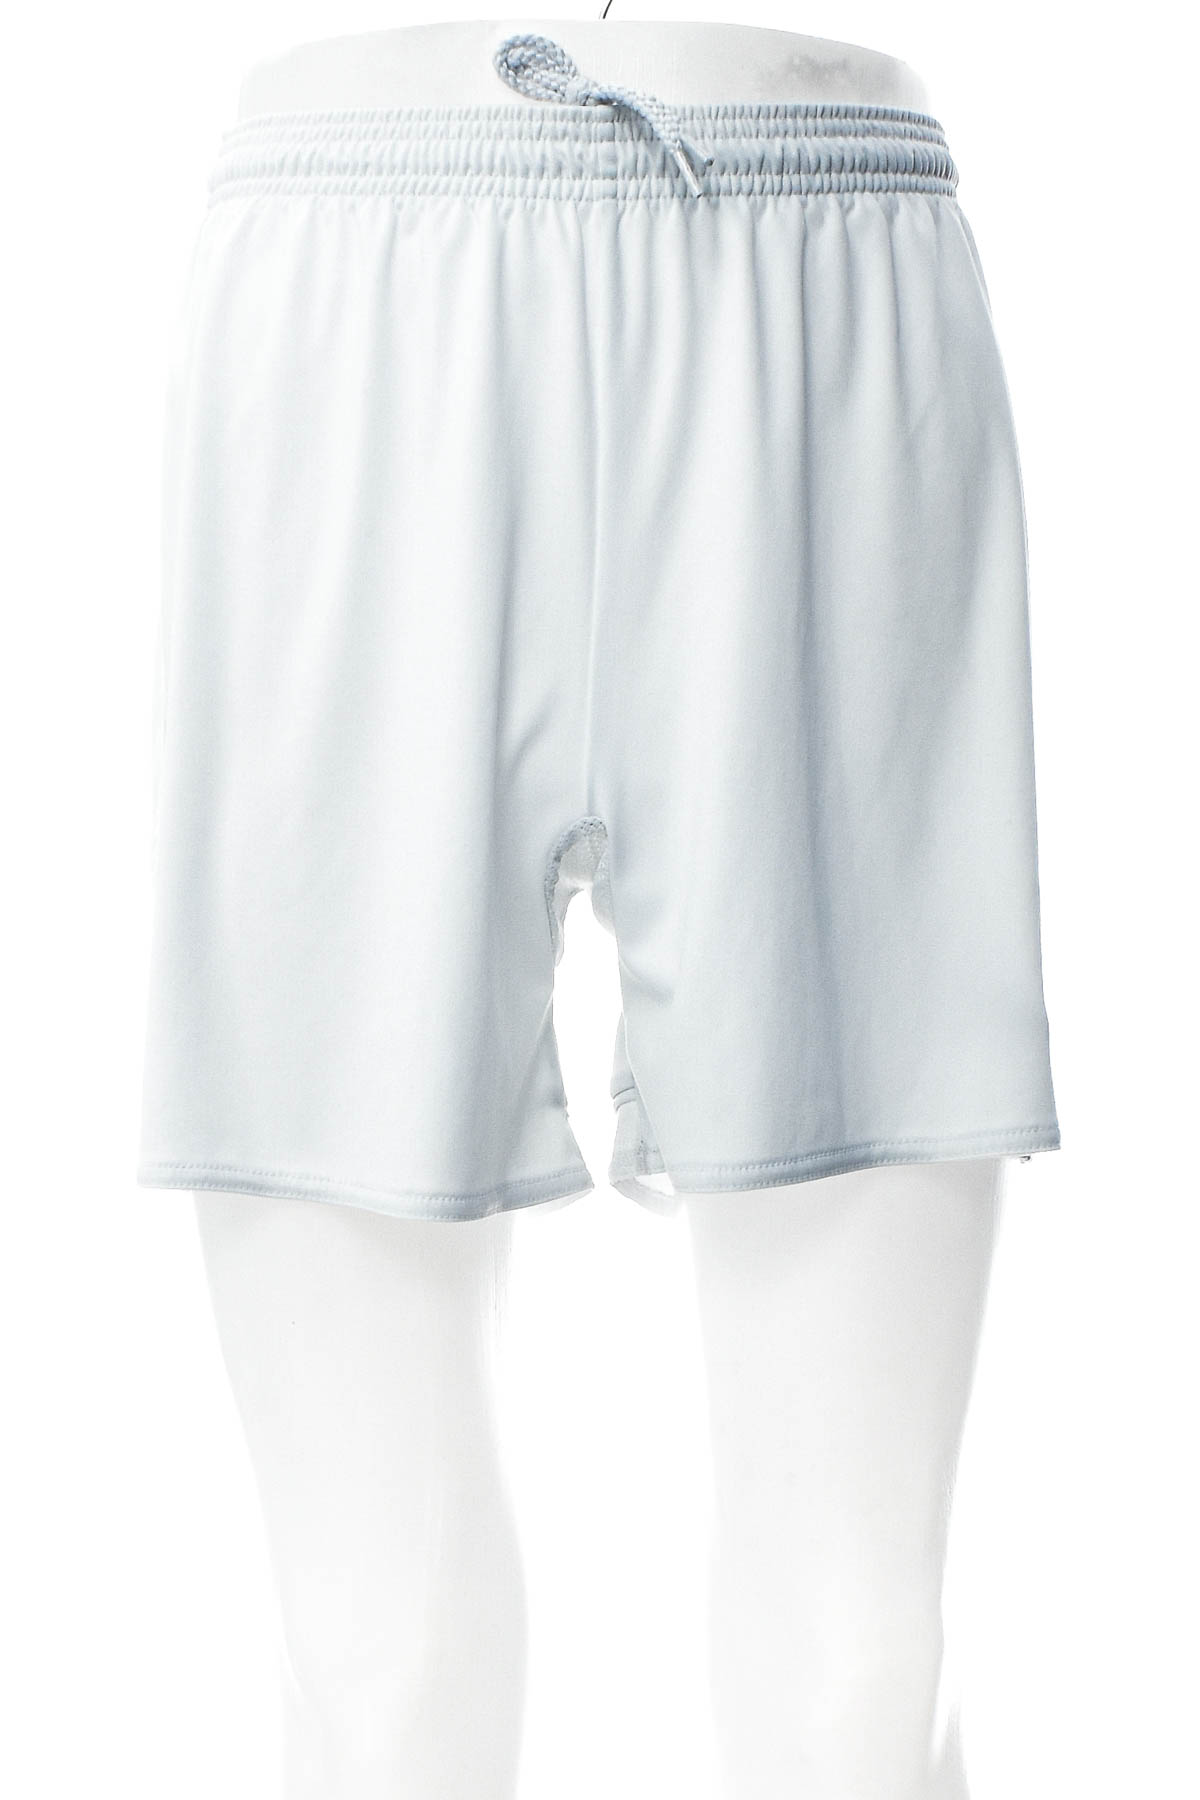 Female shorts - Adidas - 0